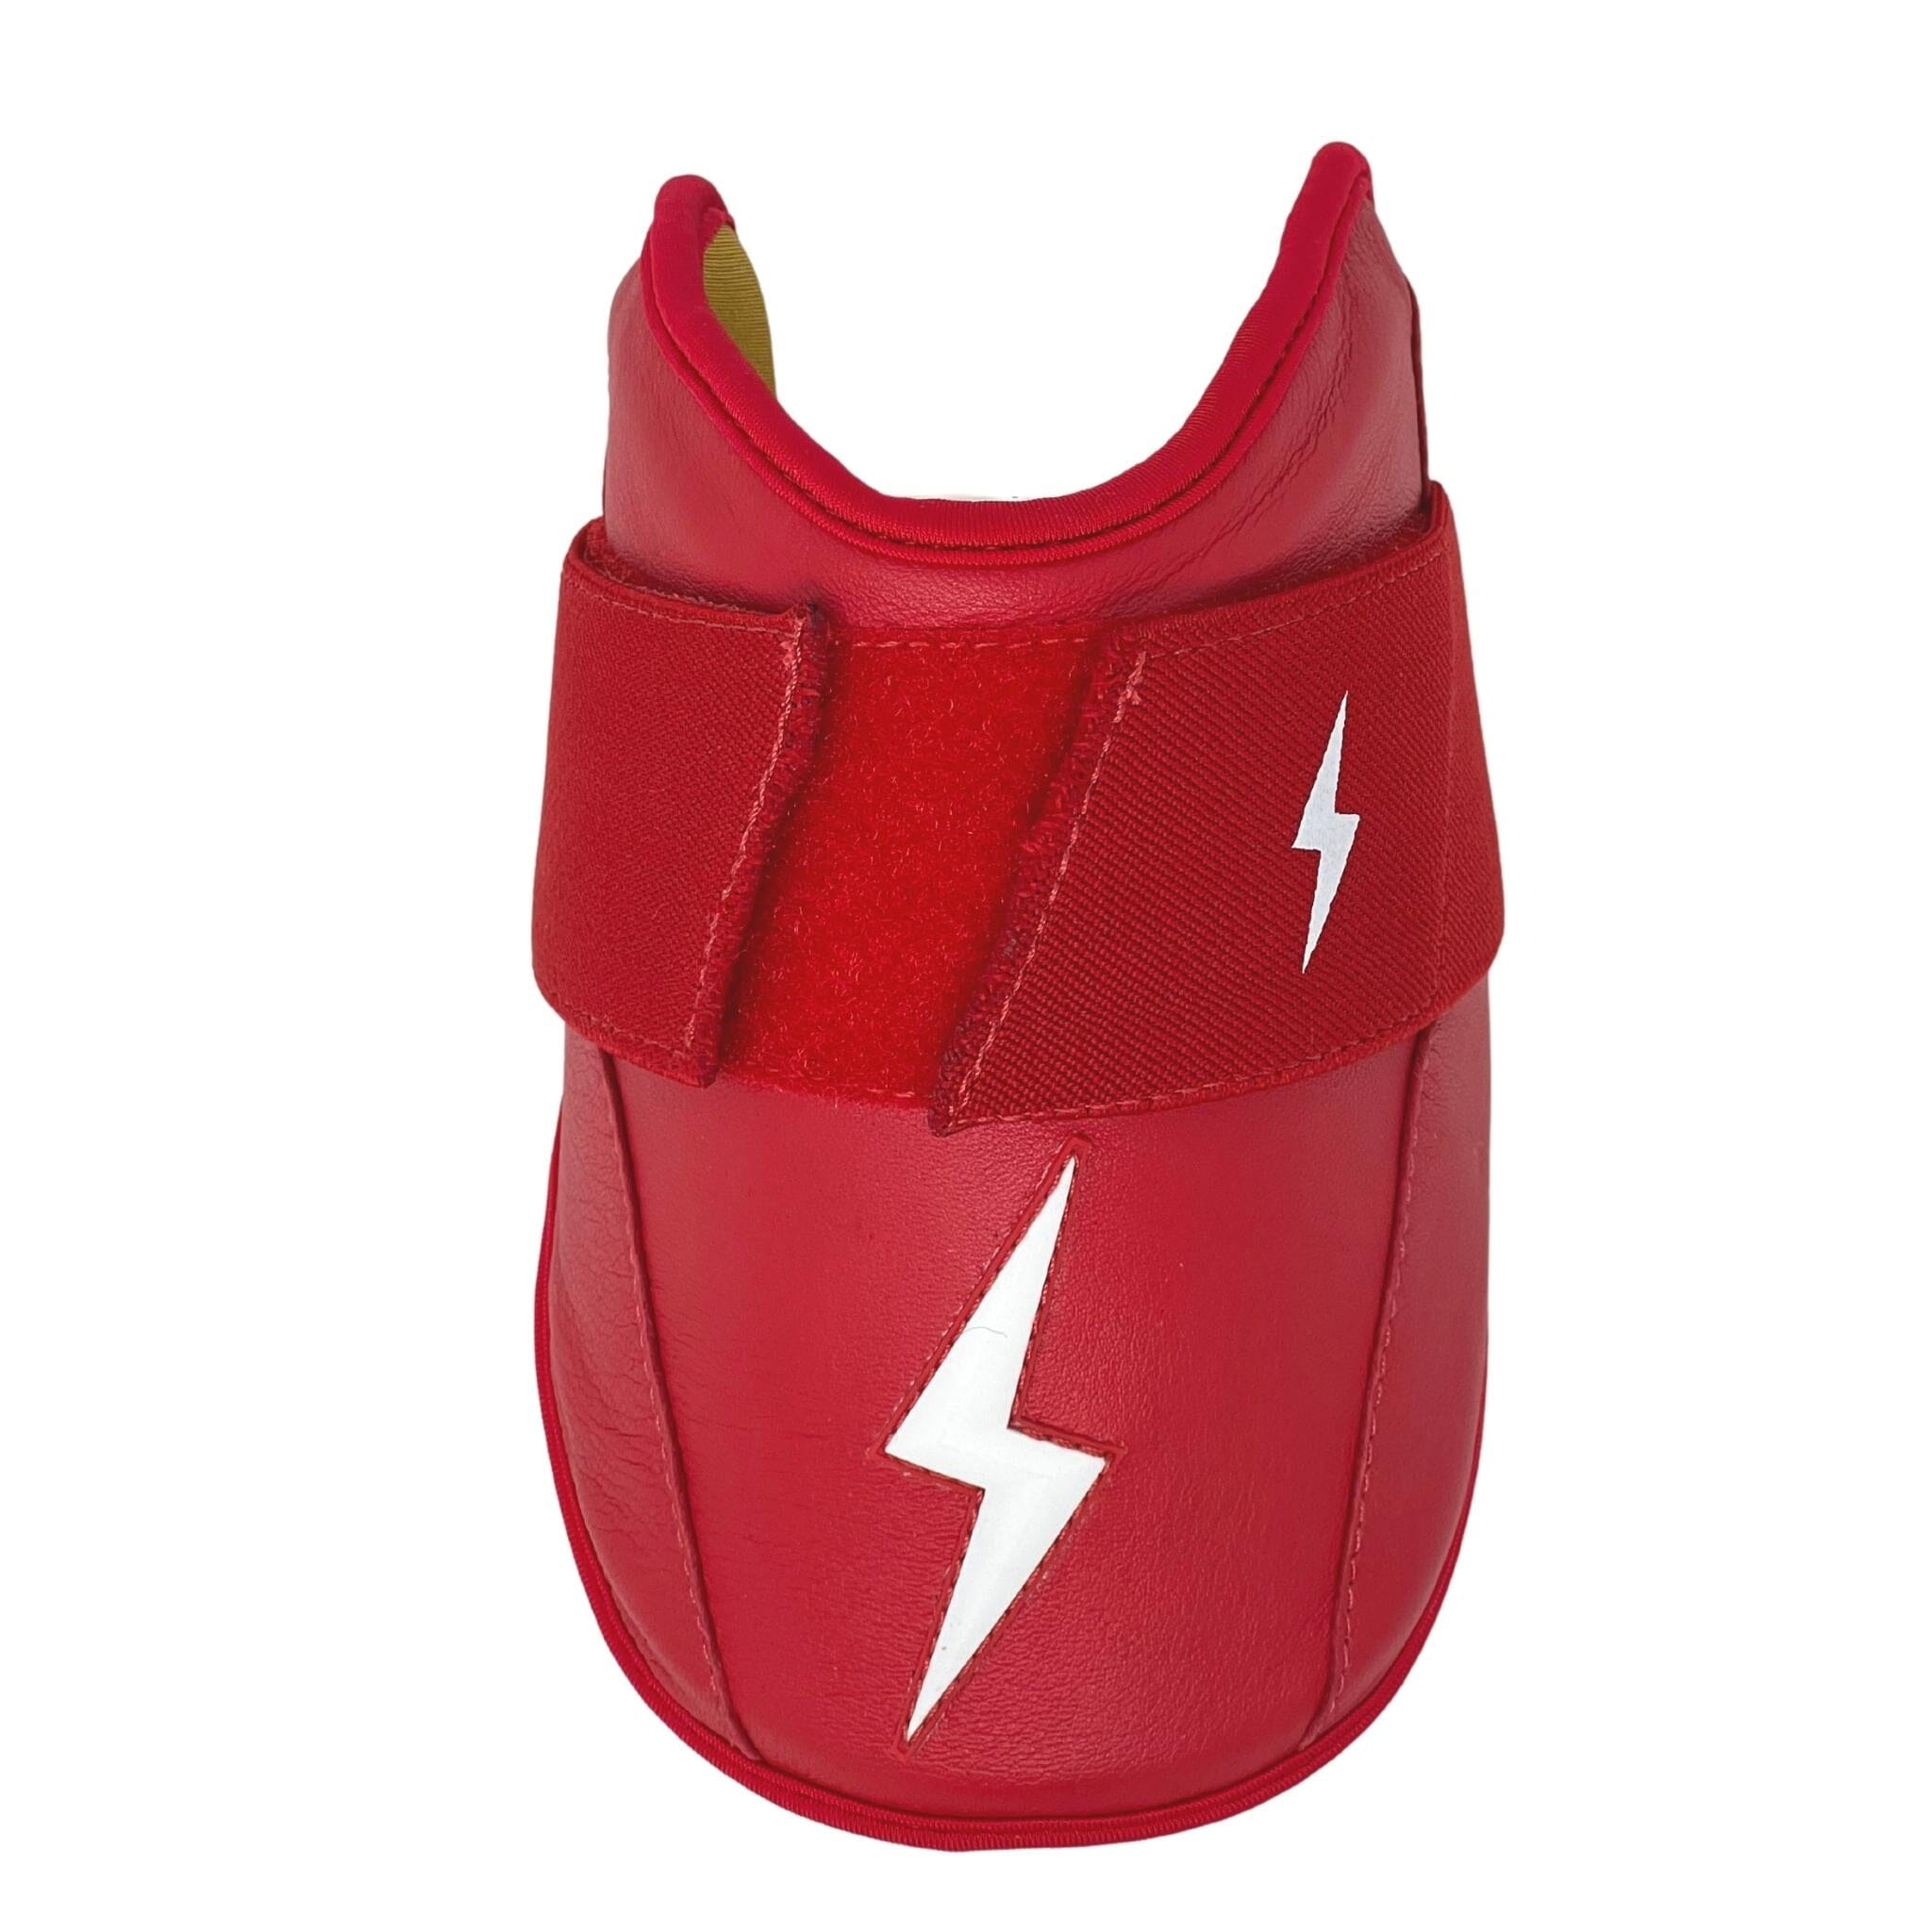 Red Arm Sleeves for Baseball, Basketball, Football, & More – BRUCE BOLT